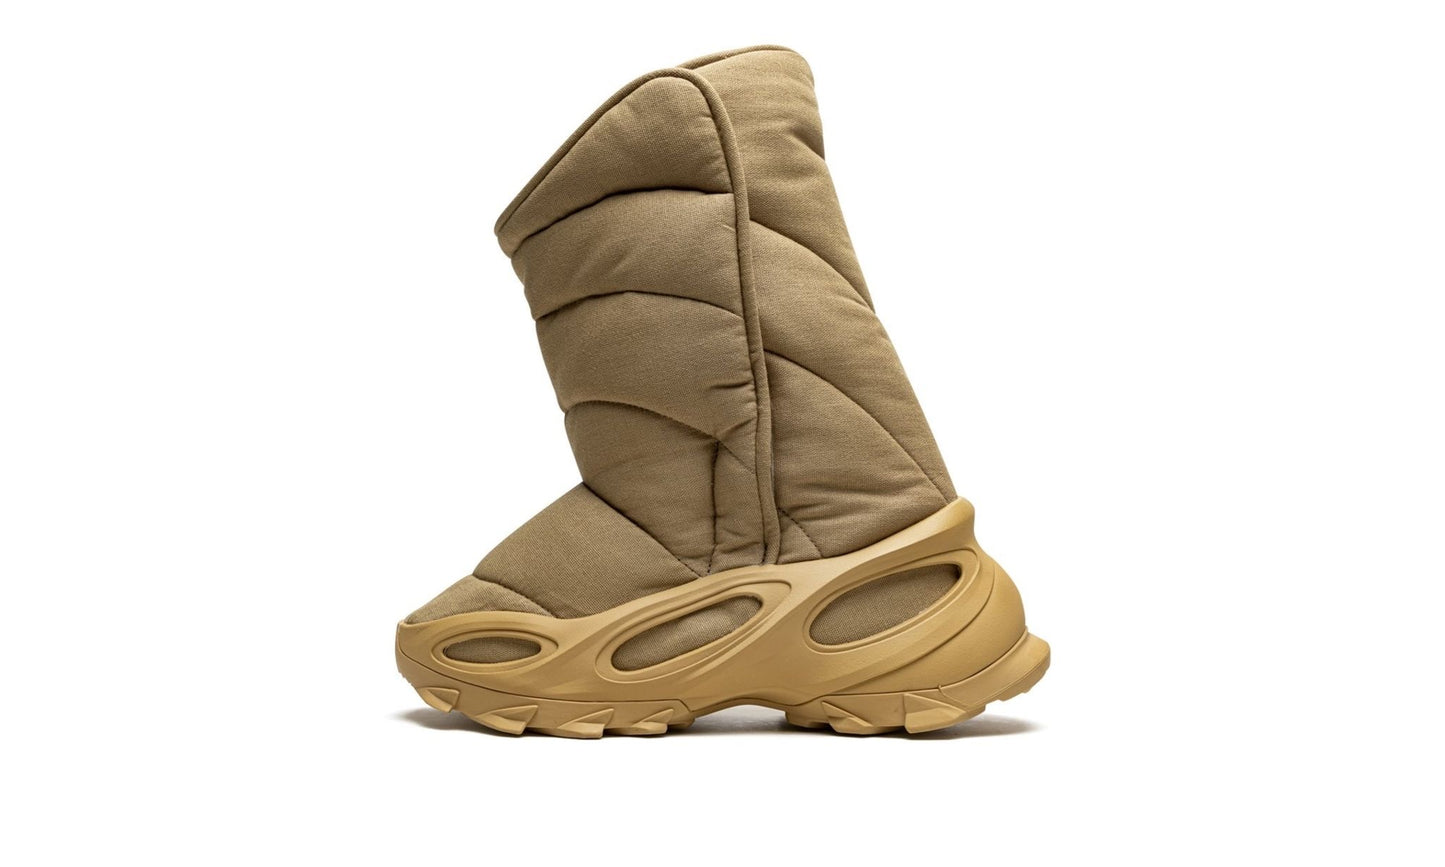 Adidas Yeezy NSLTD Boot “Khaki”